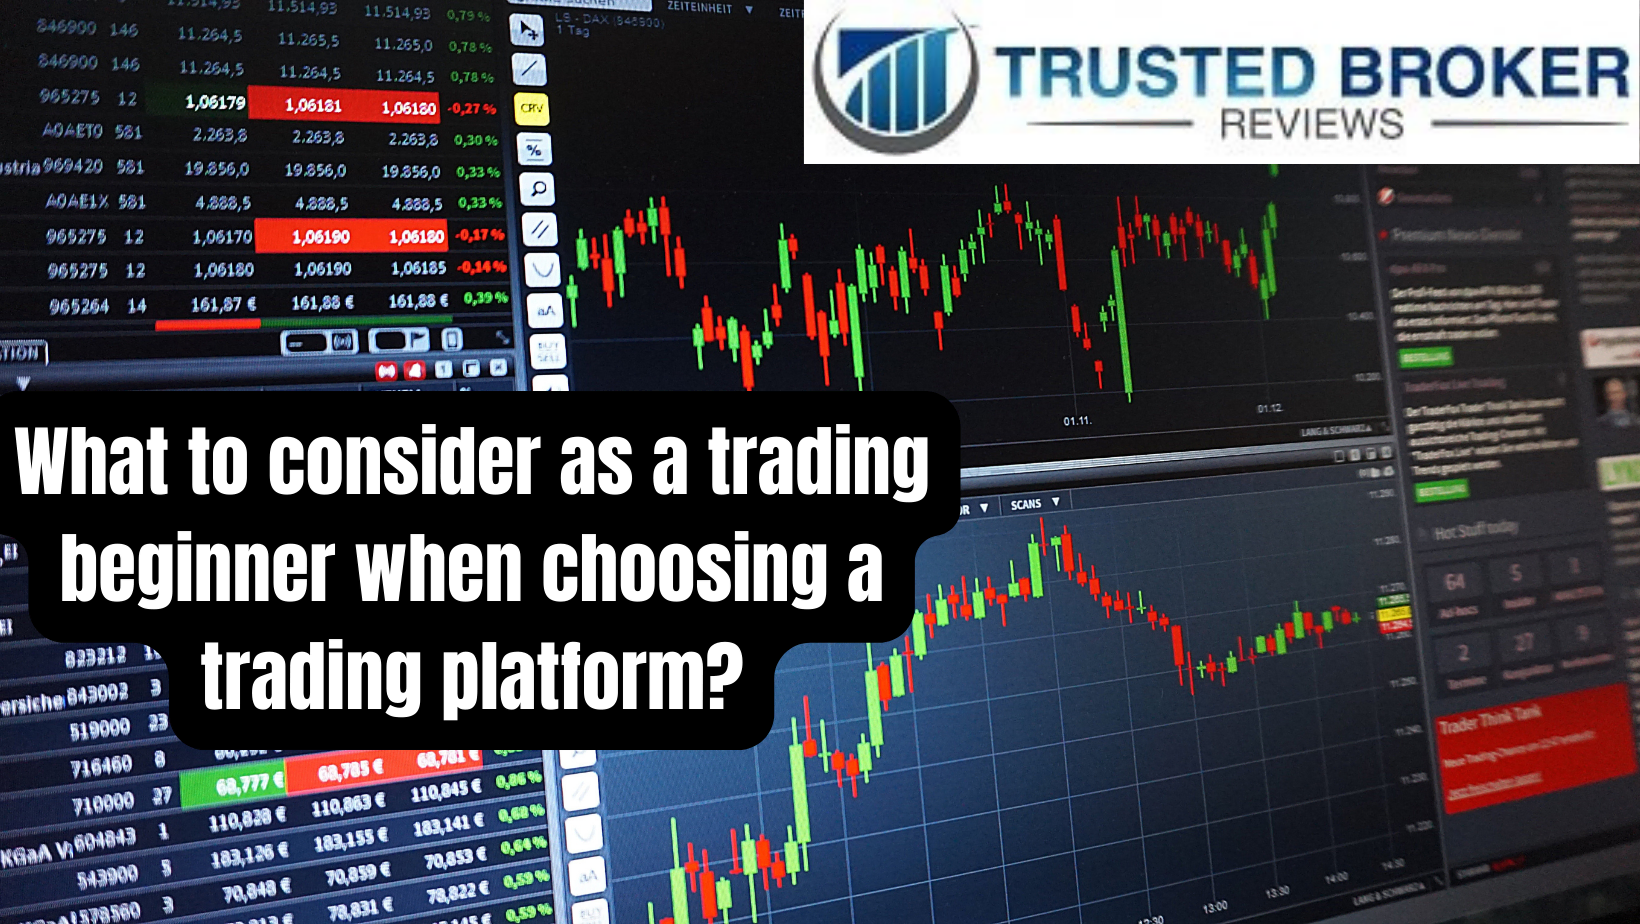 Mit kell figyelembe venni egy kezdő kereskedési platform kiválasztásakor?